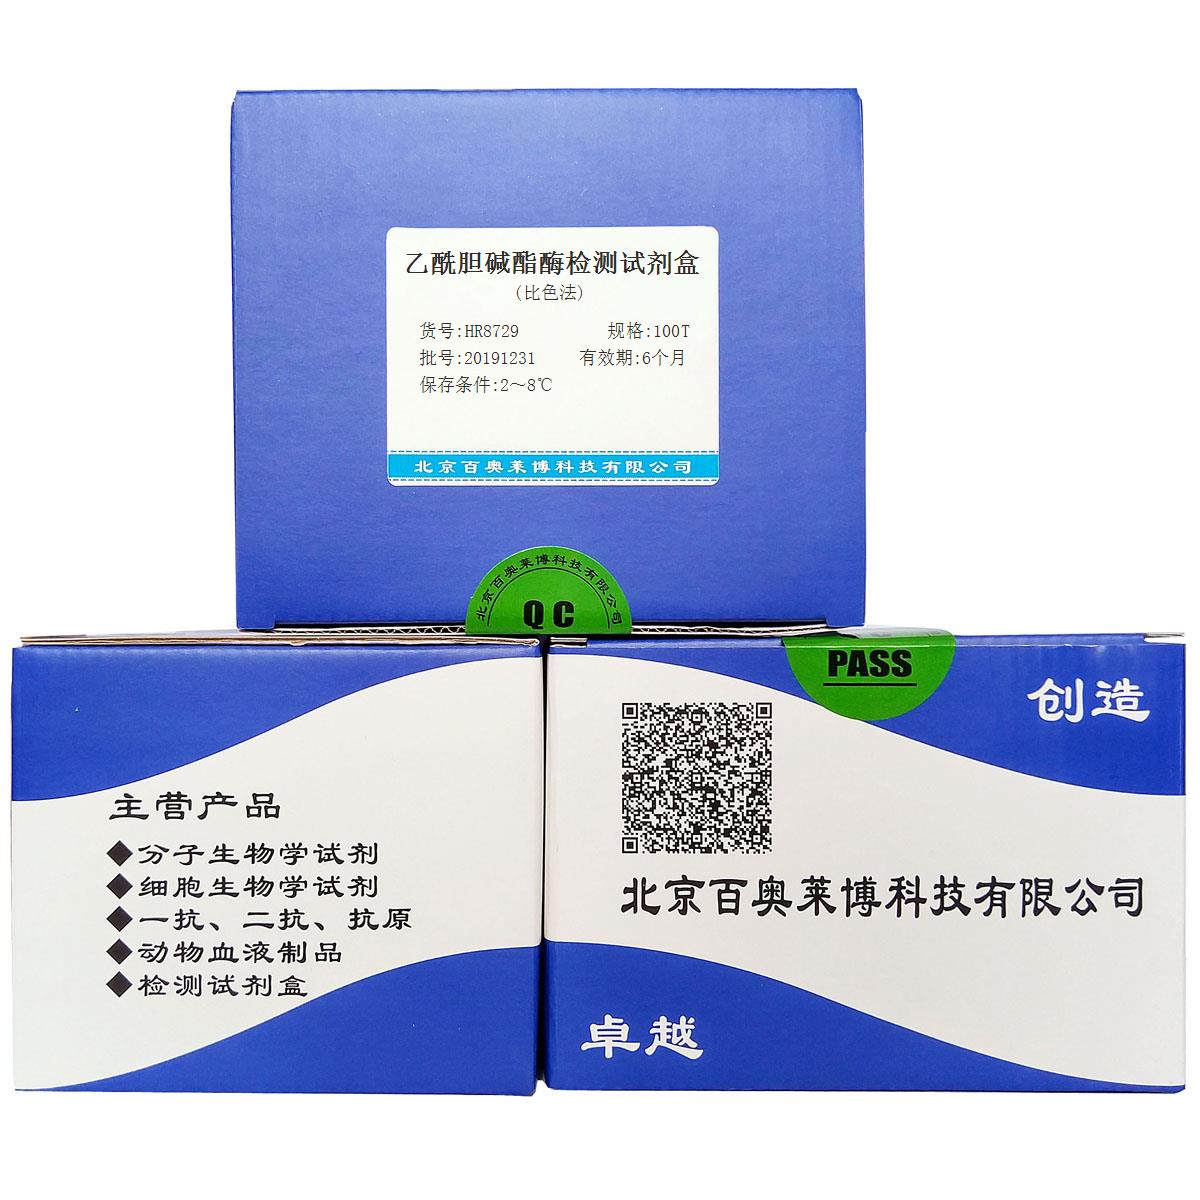 乙酰胆碱酯酶检测试剂盒(比色法)价格